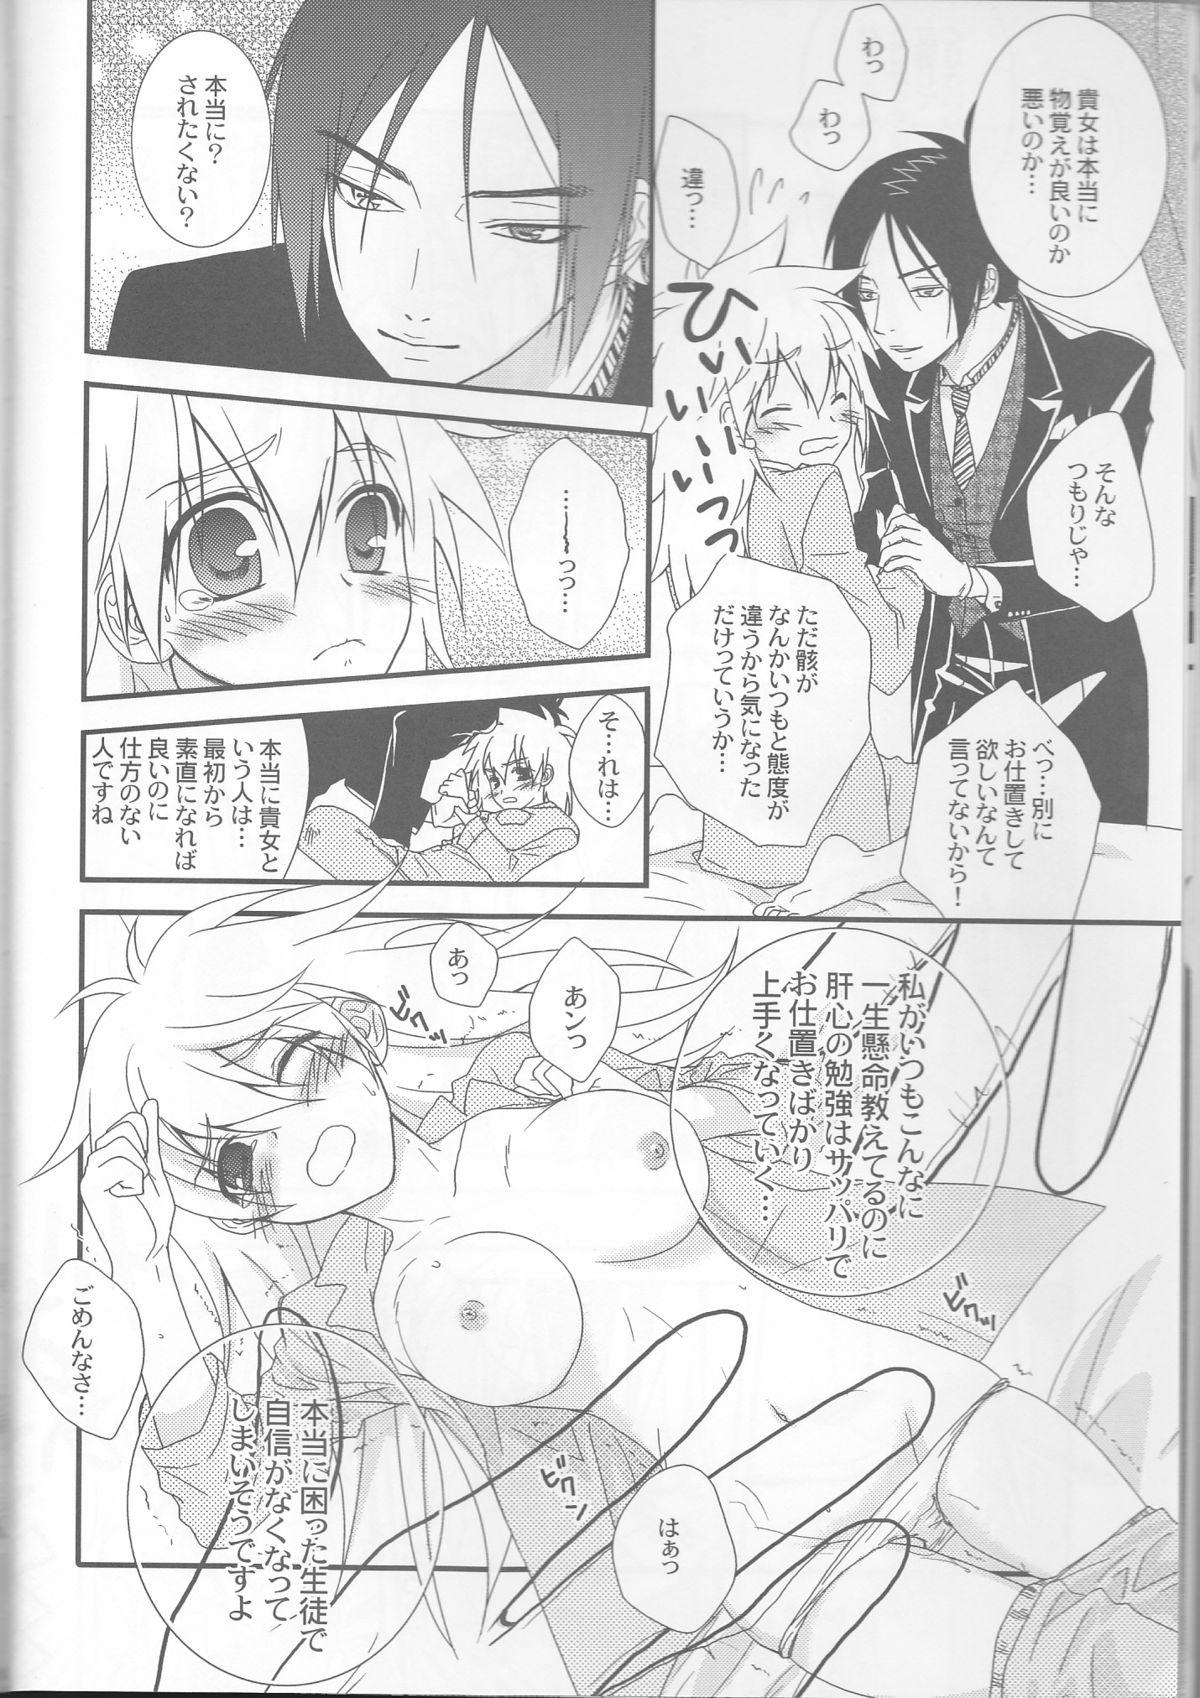 Ikillitts Tsuna-chan no Shitsuji 2 - Katekyo hitman reborn Amature Sex - Page 8